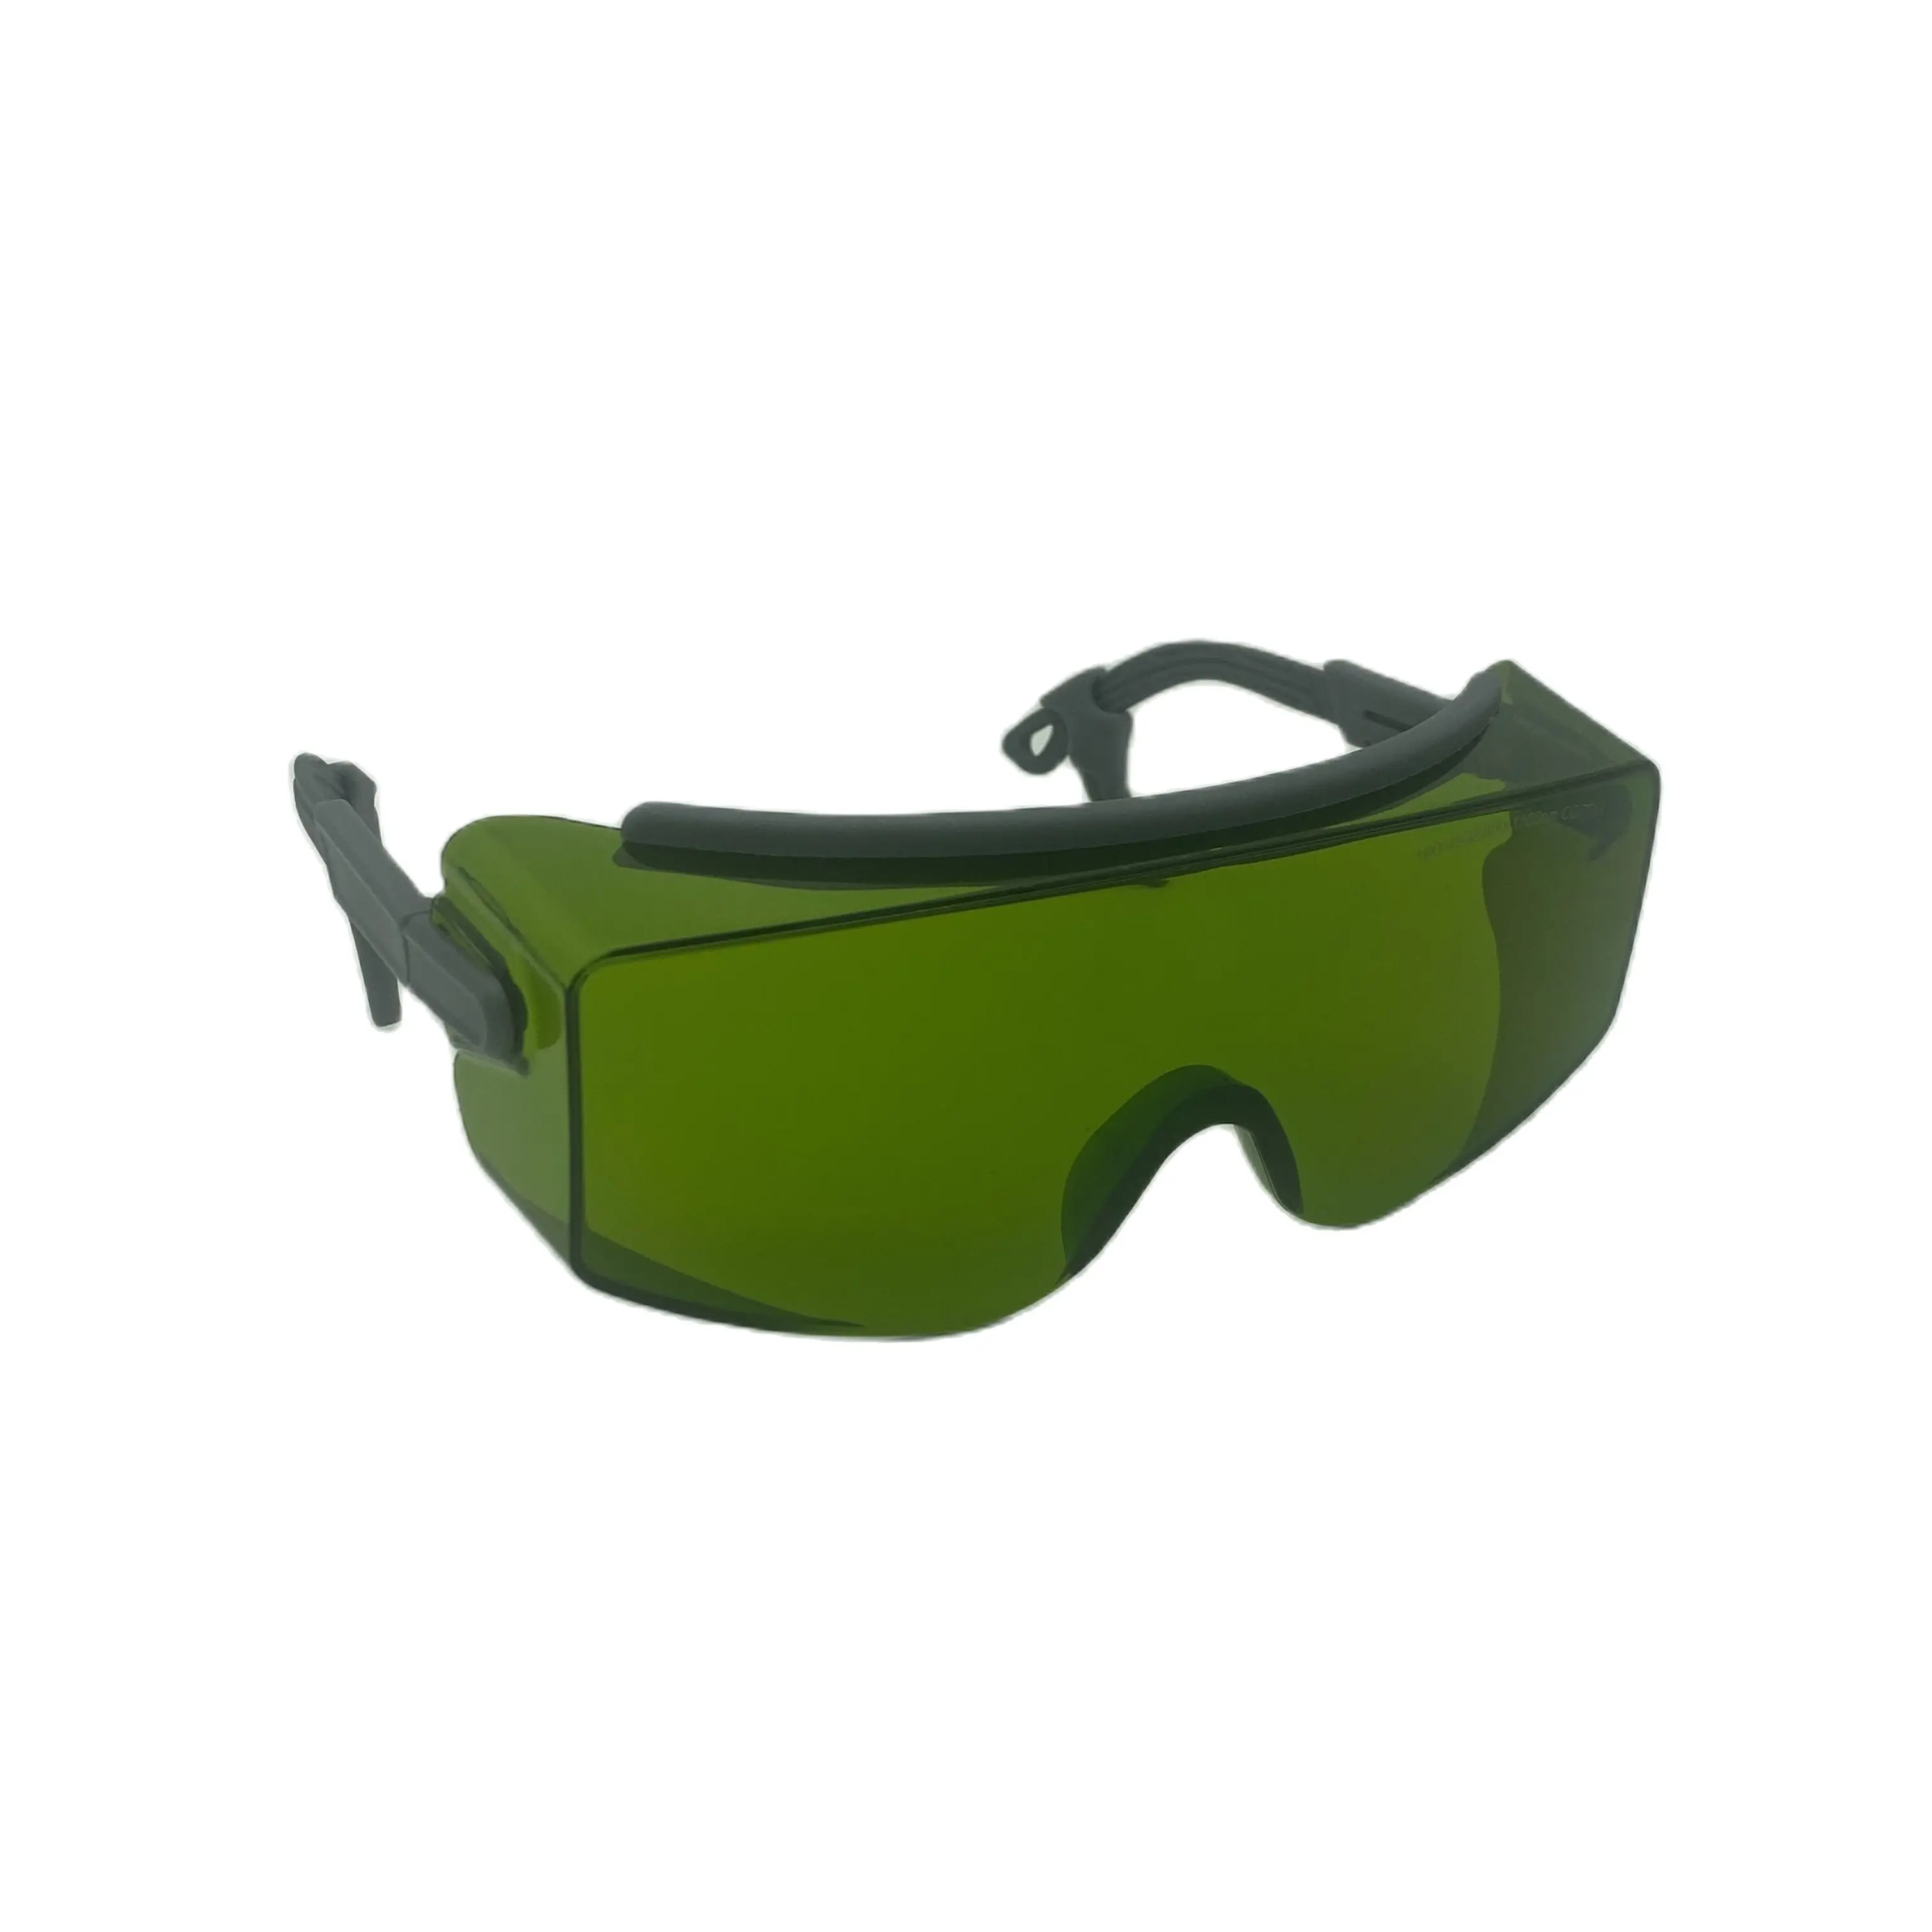 lsg-15-laser-oculos-de-seguranca-com-estojo-rigido-preto-para-alex-diodo-yag-lasers